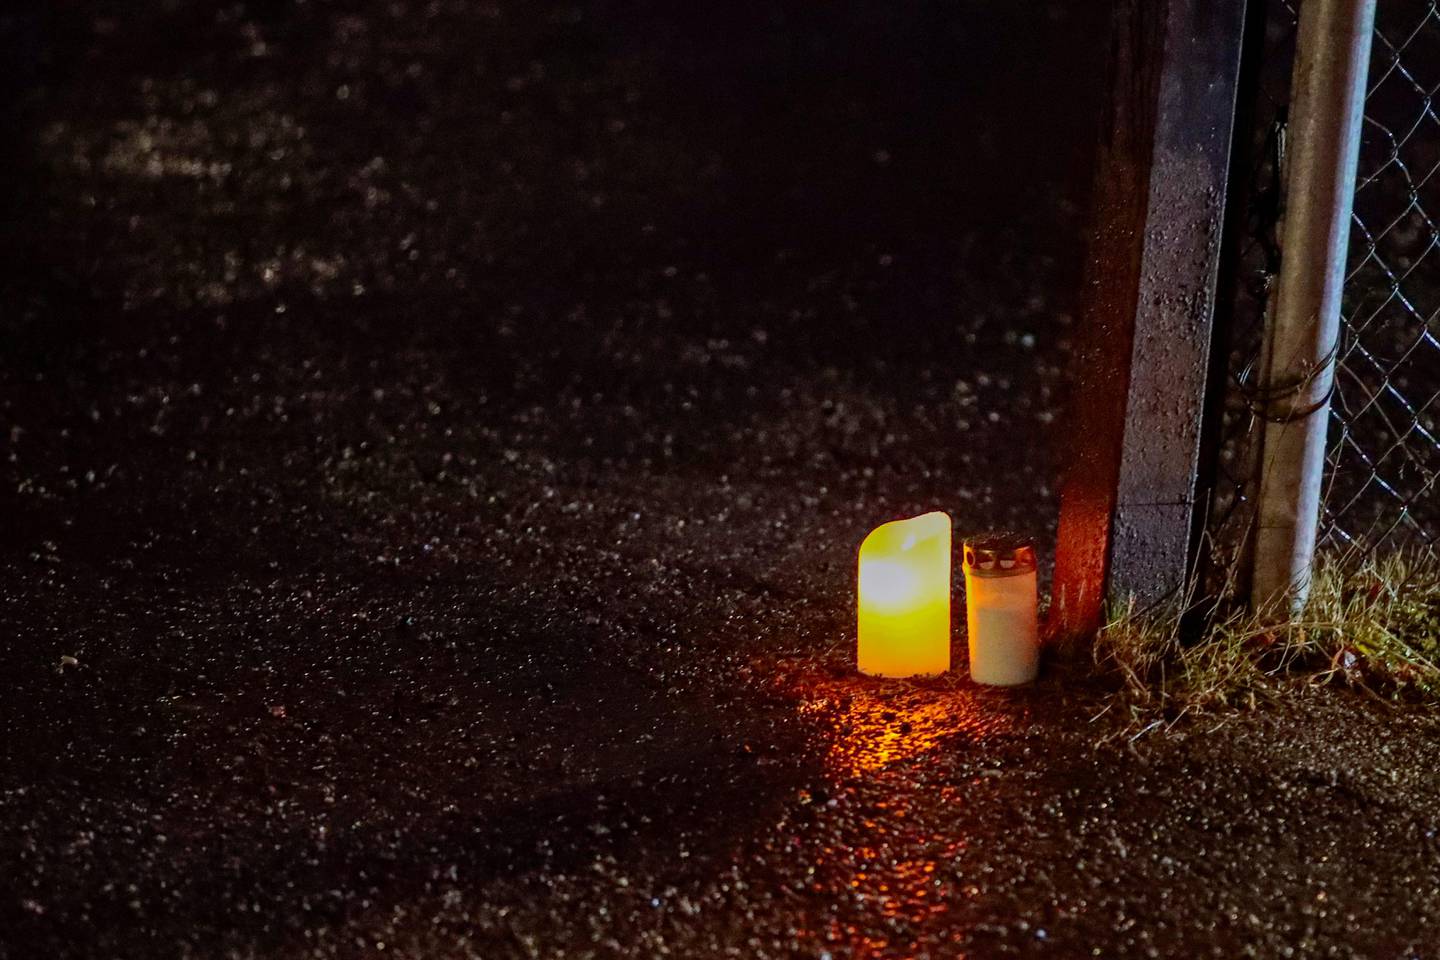 Oslo 20200111. 
Lys tent utenfor Prinsdal Grill i Oslo lørdag ettermiddag, der en ung mann ble skutt og drept sent fredag kveld.
Foto: Lise Åserud / NTB scanpix